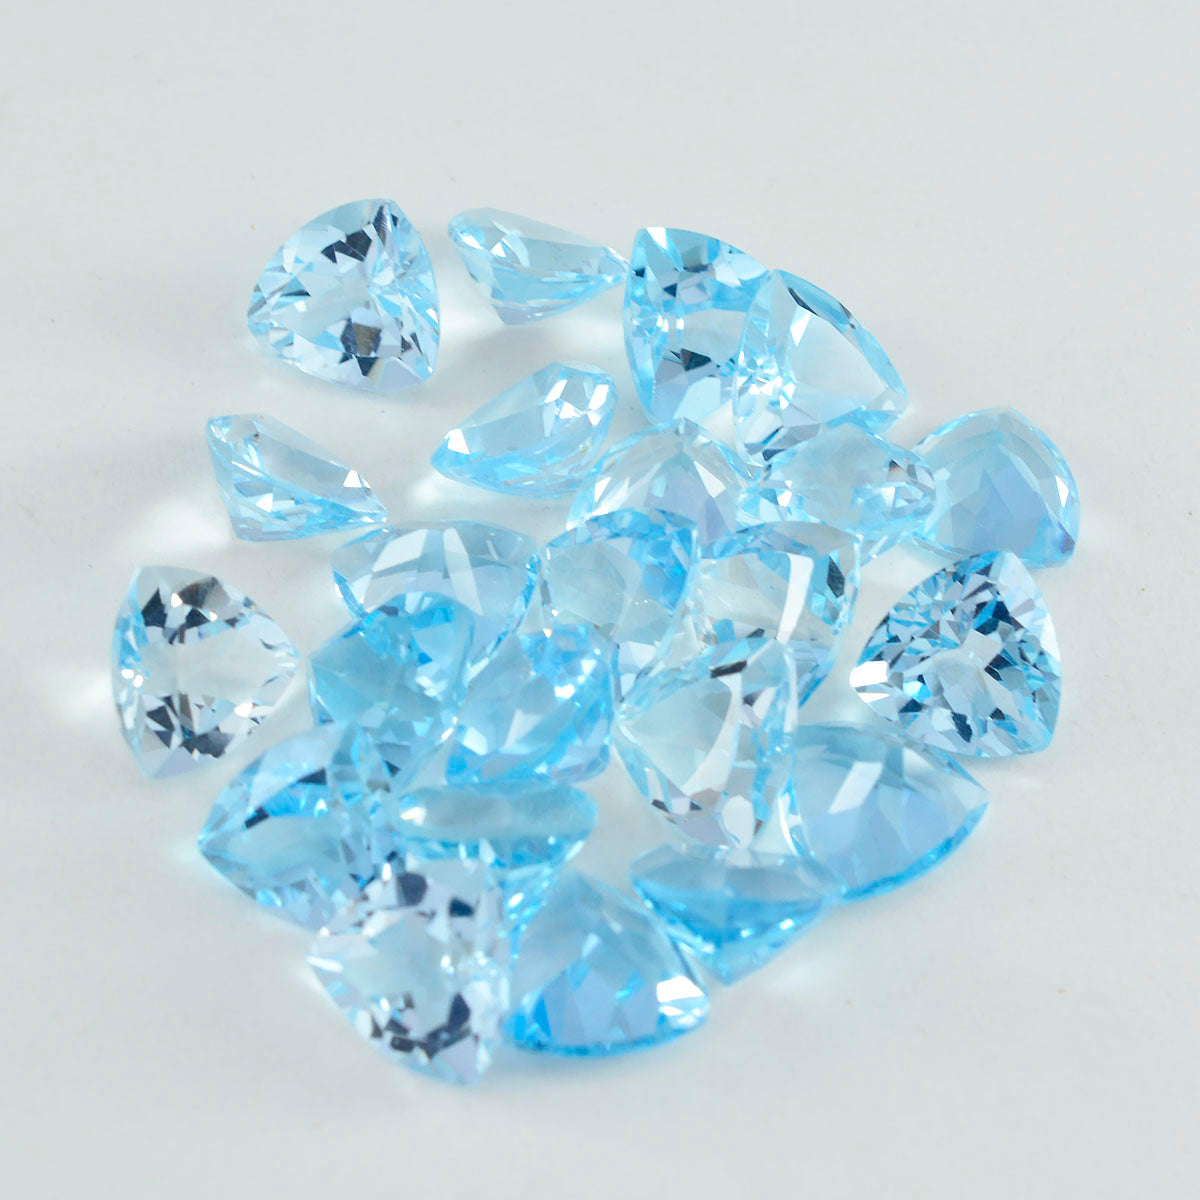 riyogems 1 шт. натуральный синий топаз ограненный 6x6 мм форма триллиона прекрасное качество свободный драгоценный камень